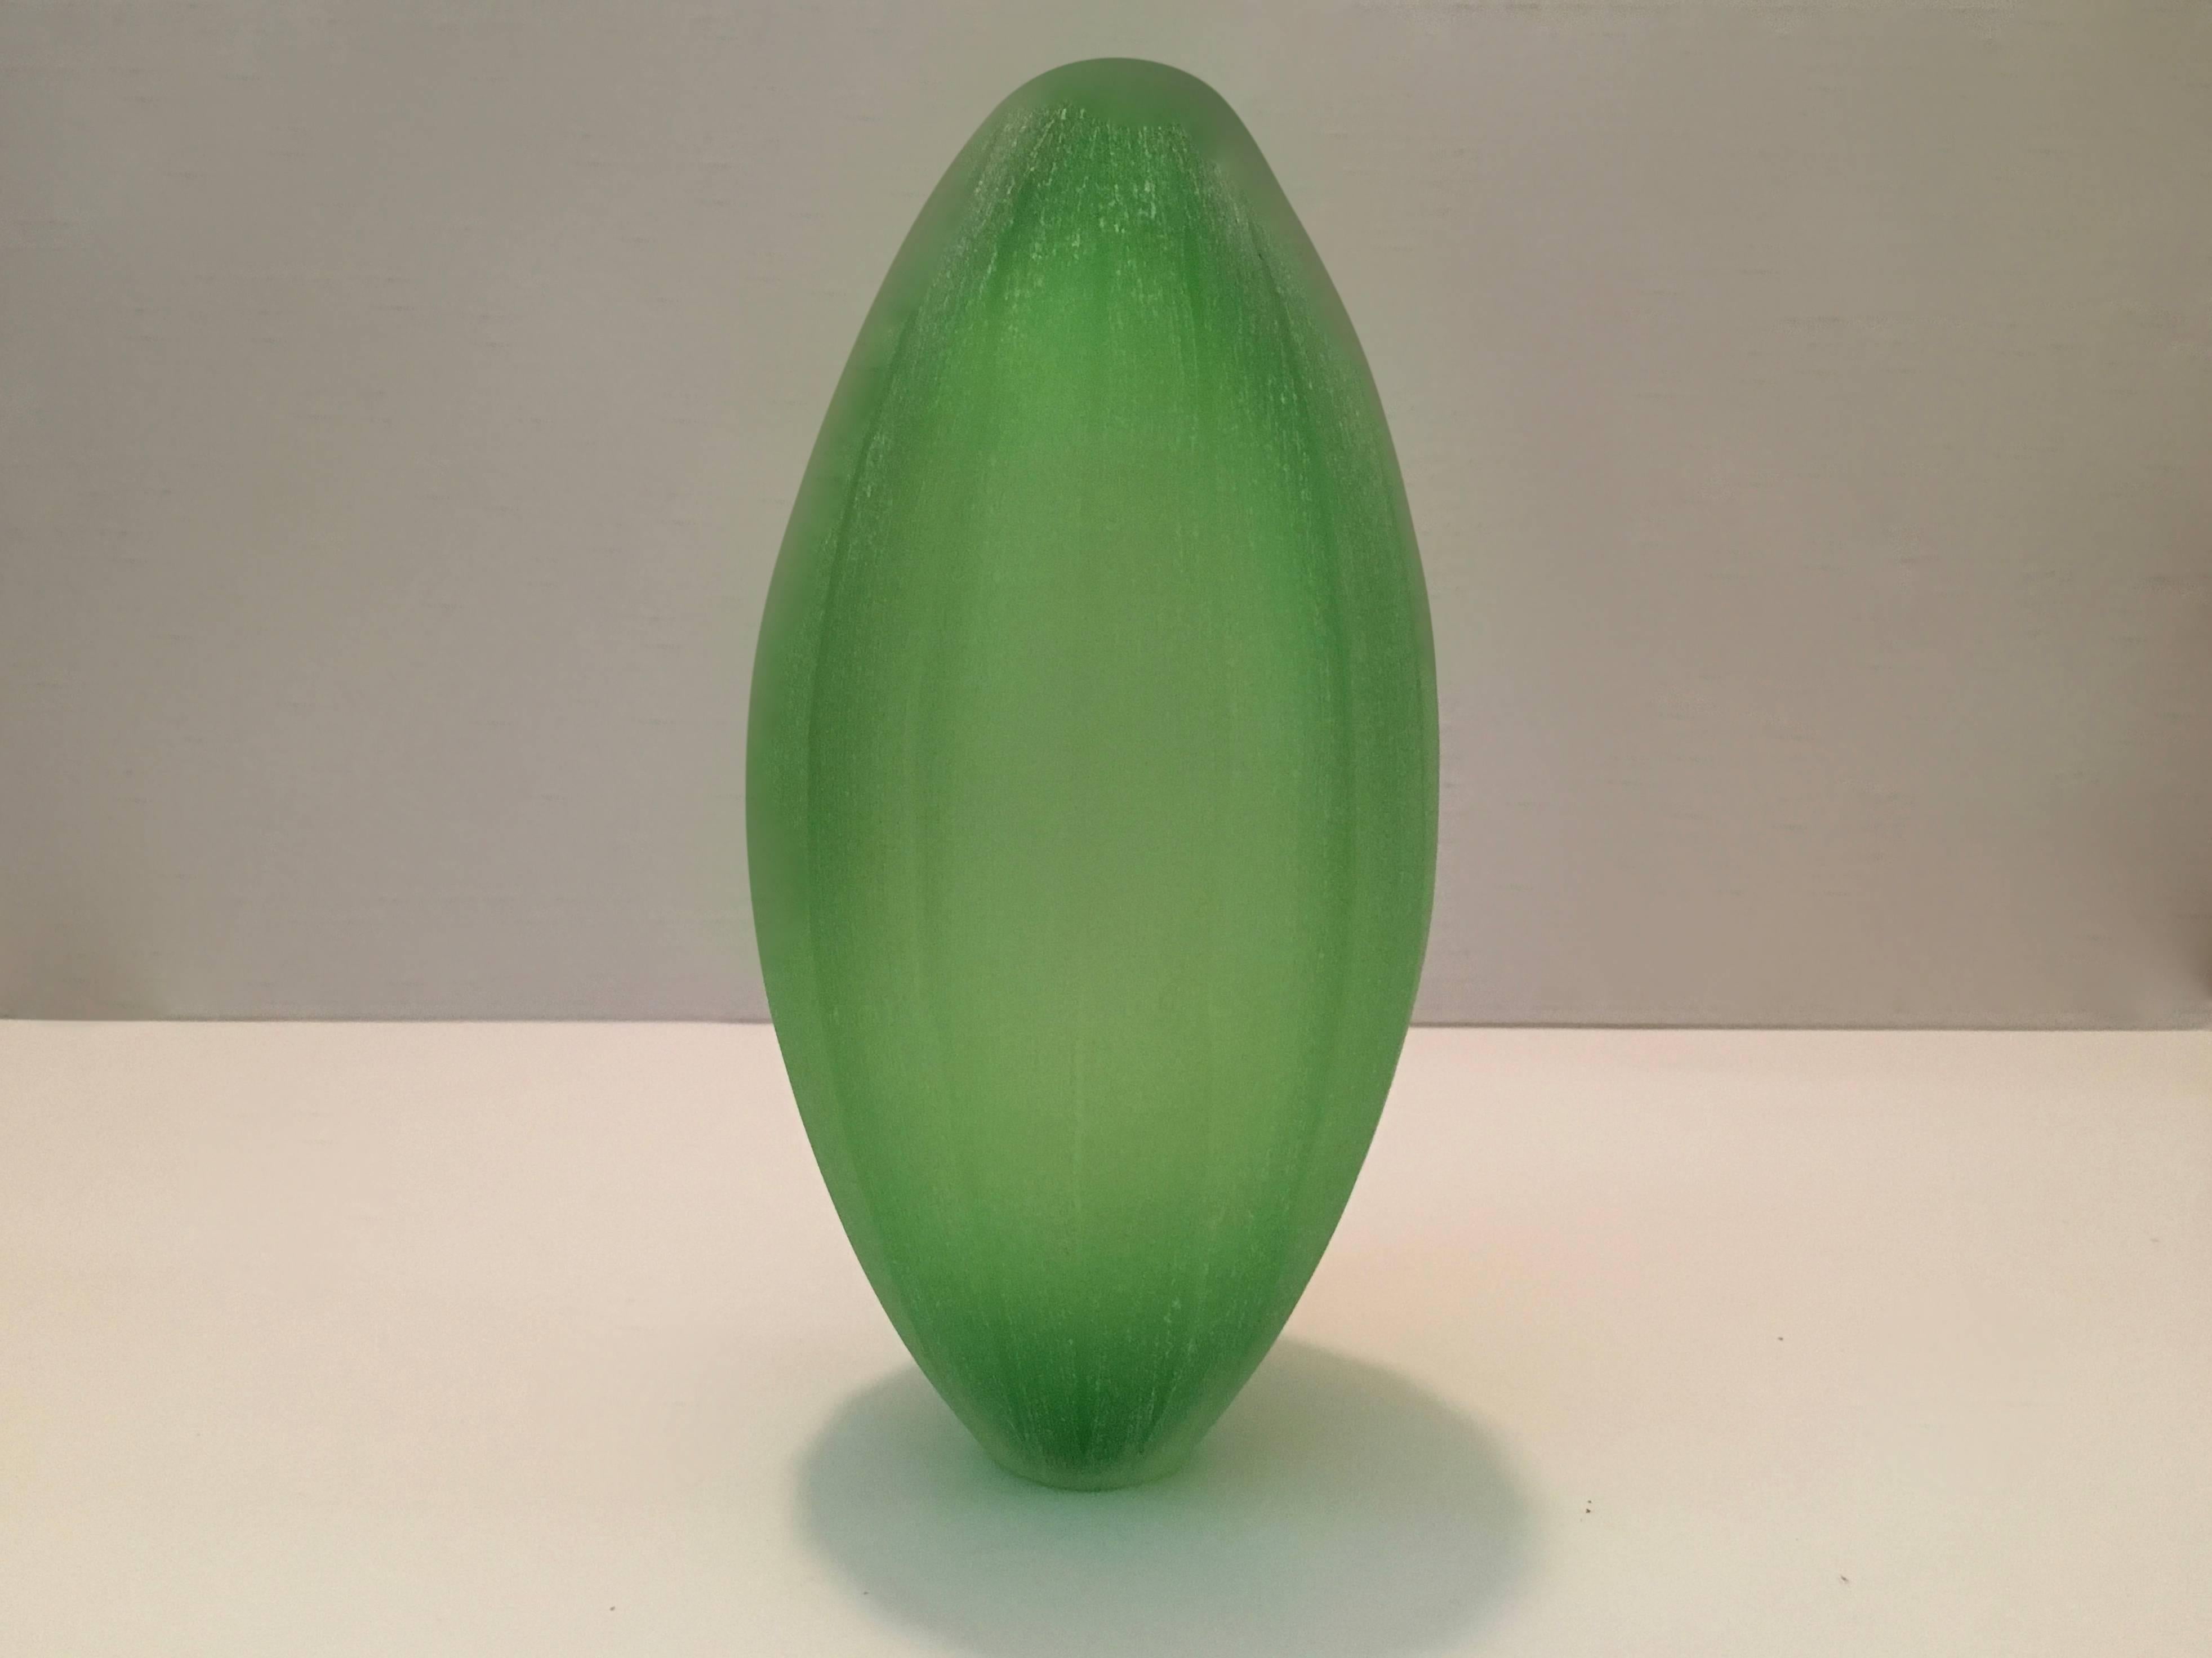 Vase, entworfen von Laura de Santillana in einer Edition für Arcade, 2001. Sie gehört zu einer Serie von Vasen, die von tropischen Früchten und Pflanzenformen inspiriert sind und die gleiche matte, handgravierte Oberfläche haben:
PAPAIA, hergestellt